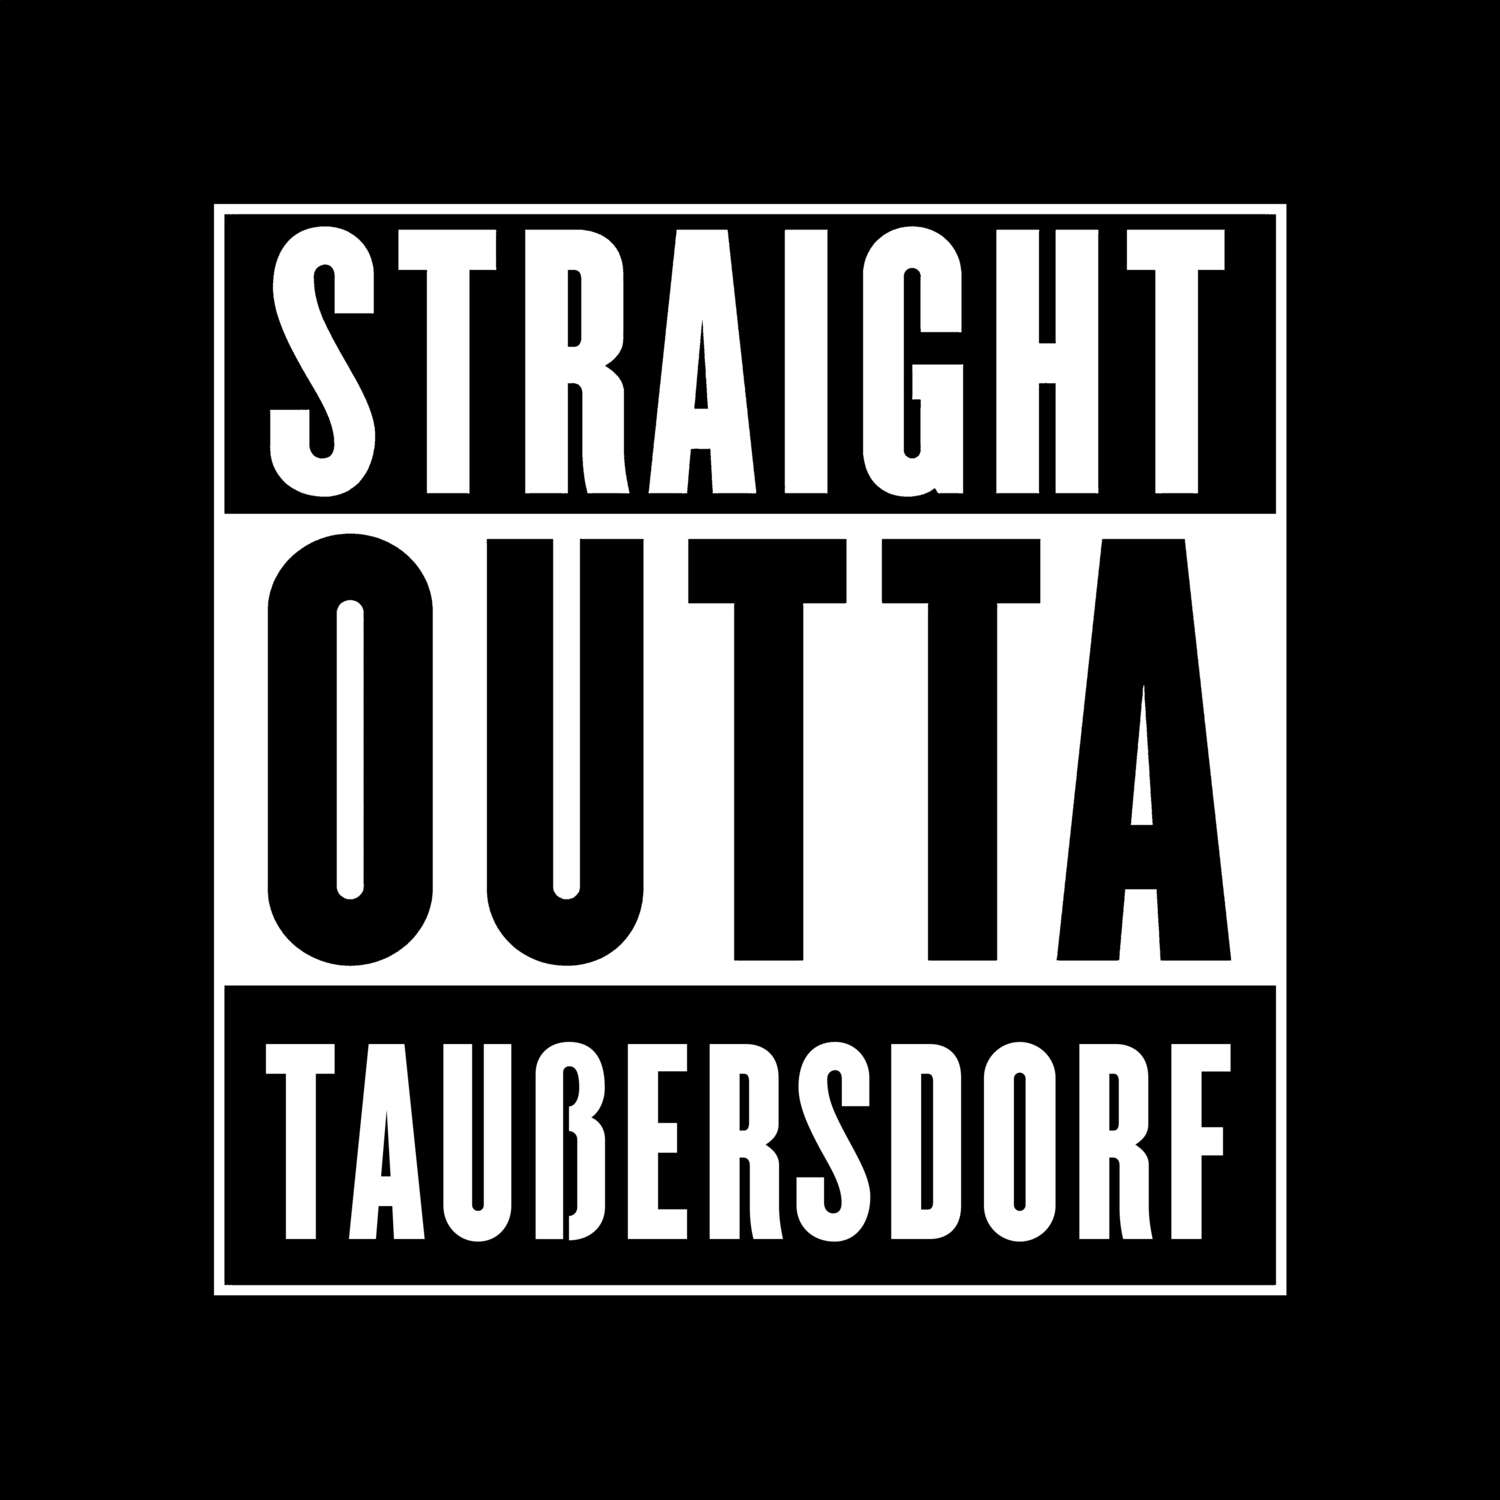 Taußersdorf T-Shirt »Straight Outta«